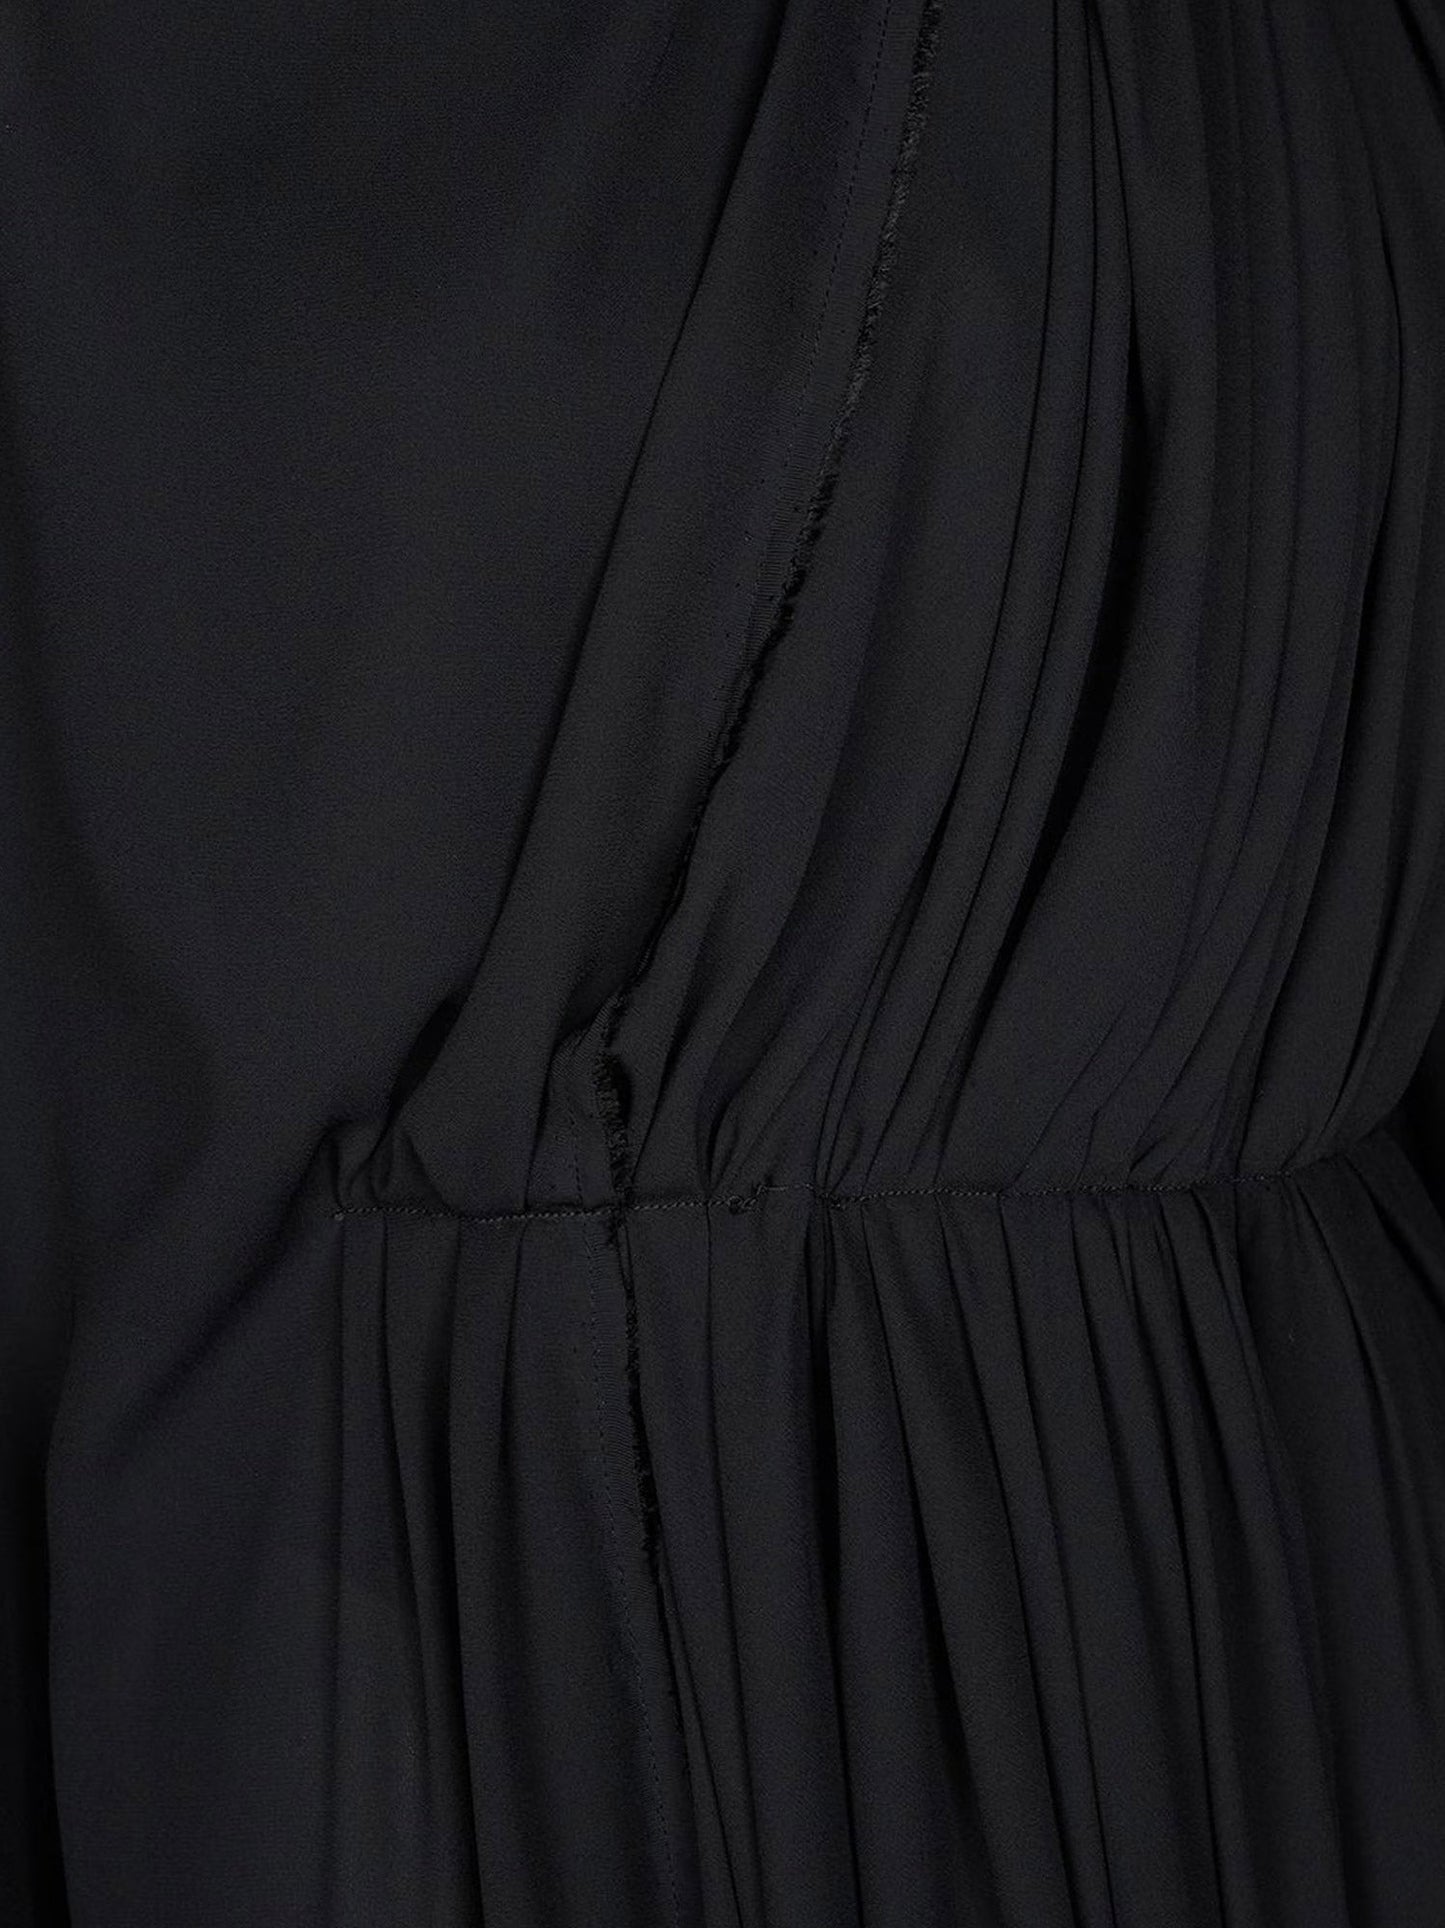 Balenciaga Woman Dress Woman Black Dresses